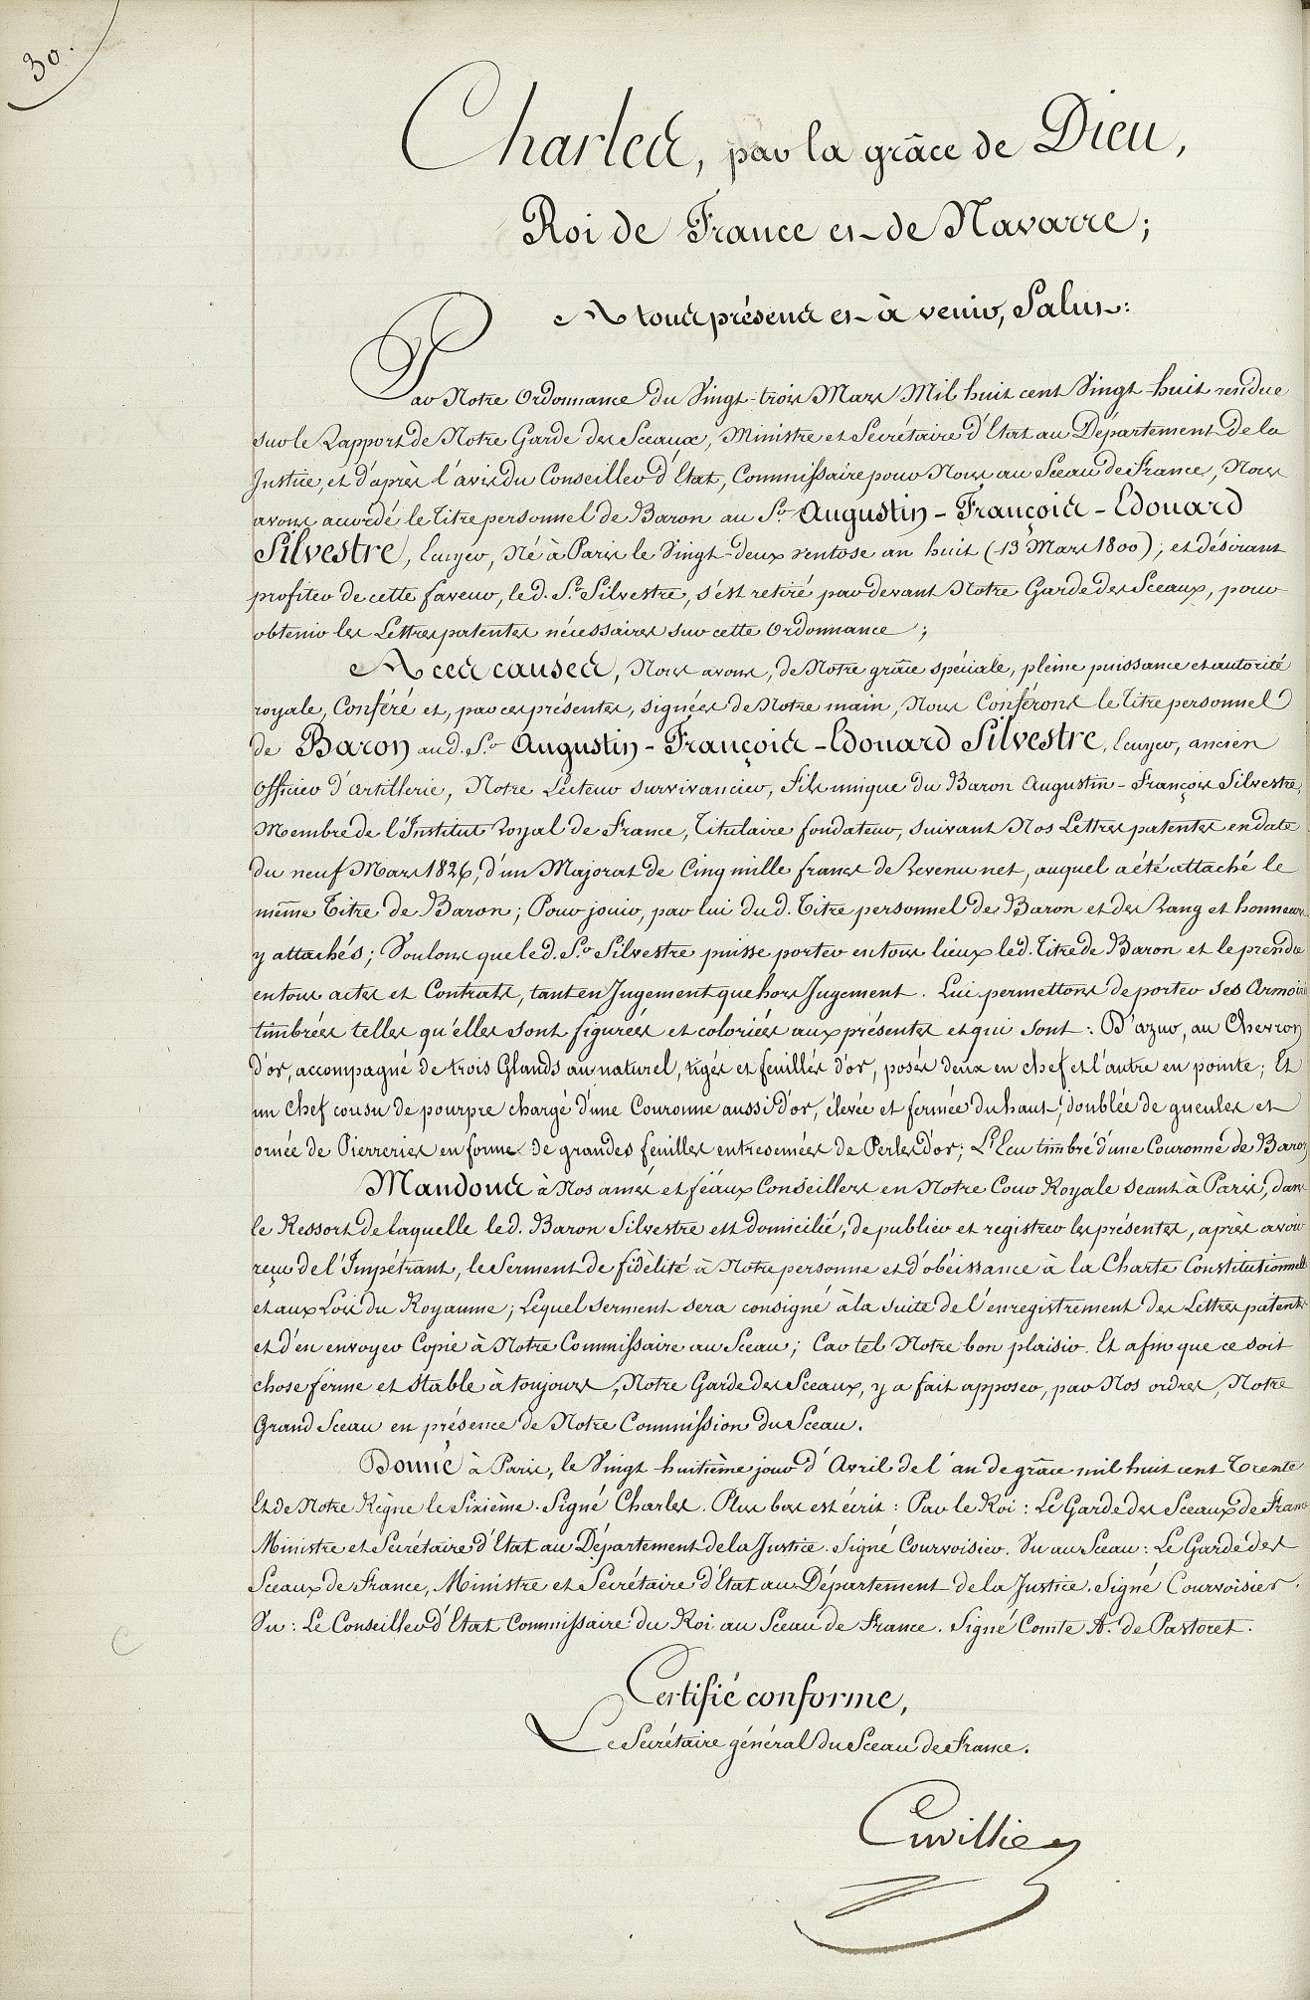  Titre personnel de baron, accordé à Edouard Silvestre - Extrait du registres de transcription des lettres patentes